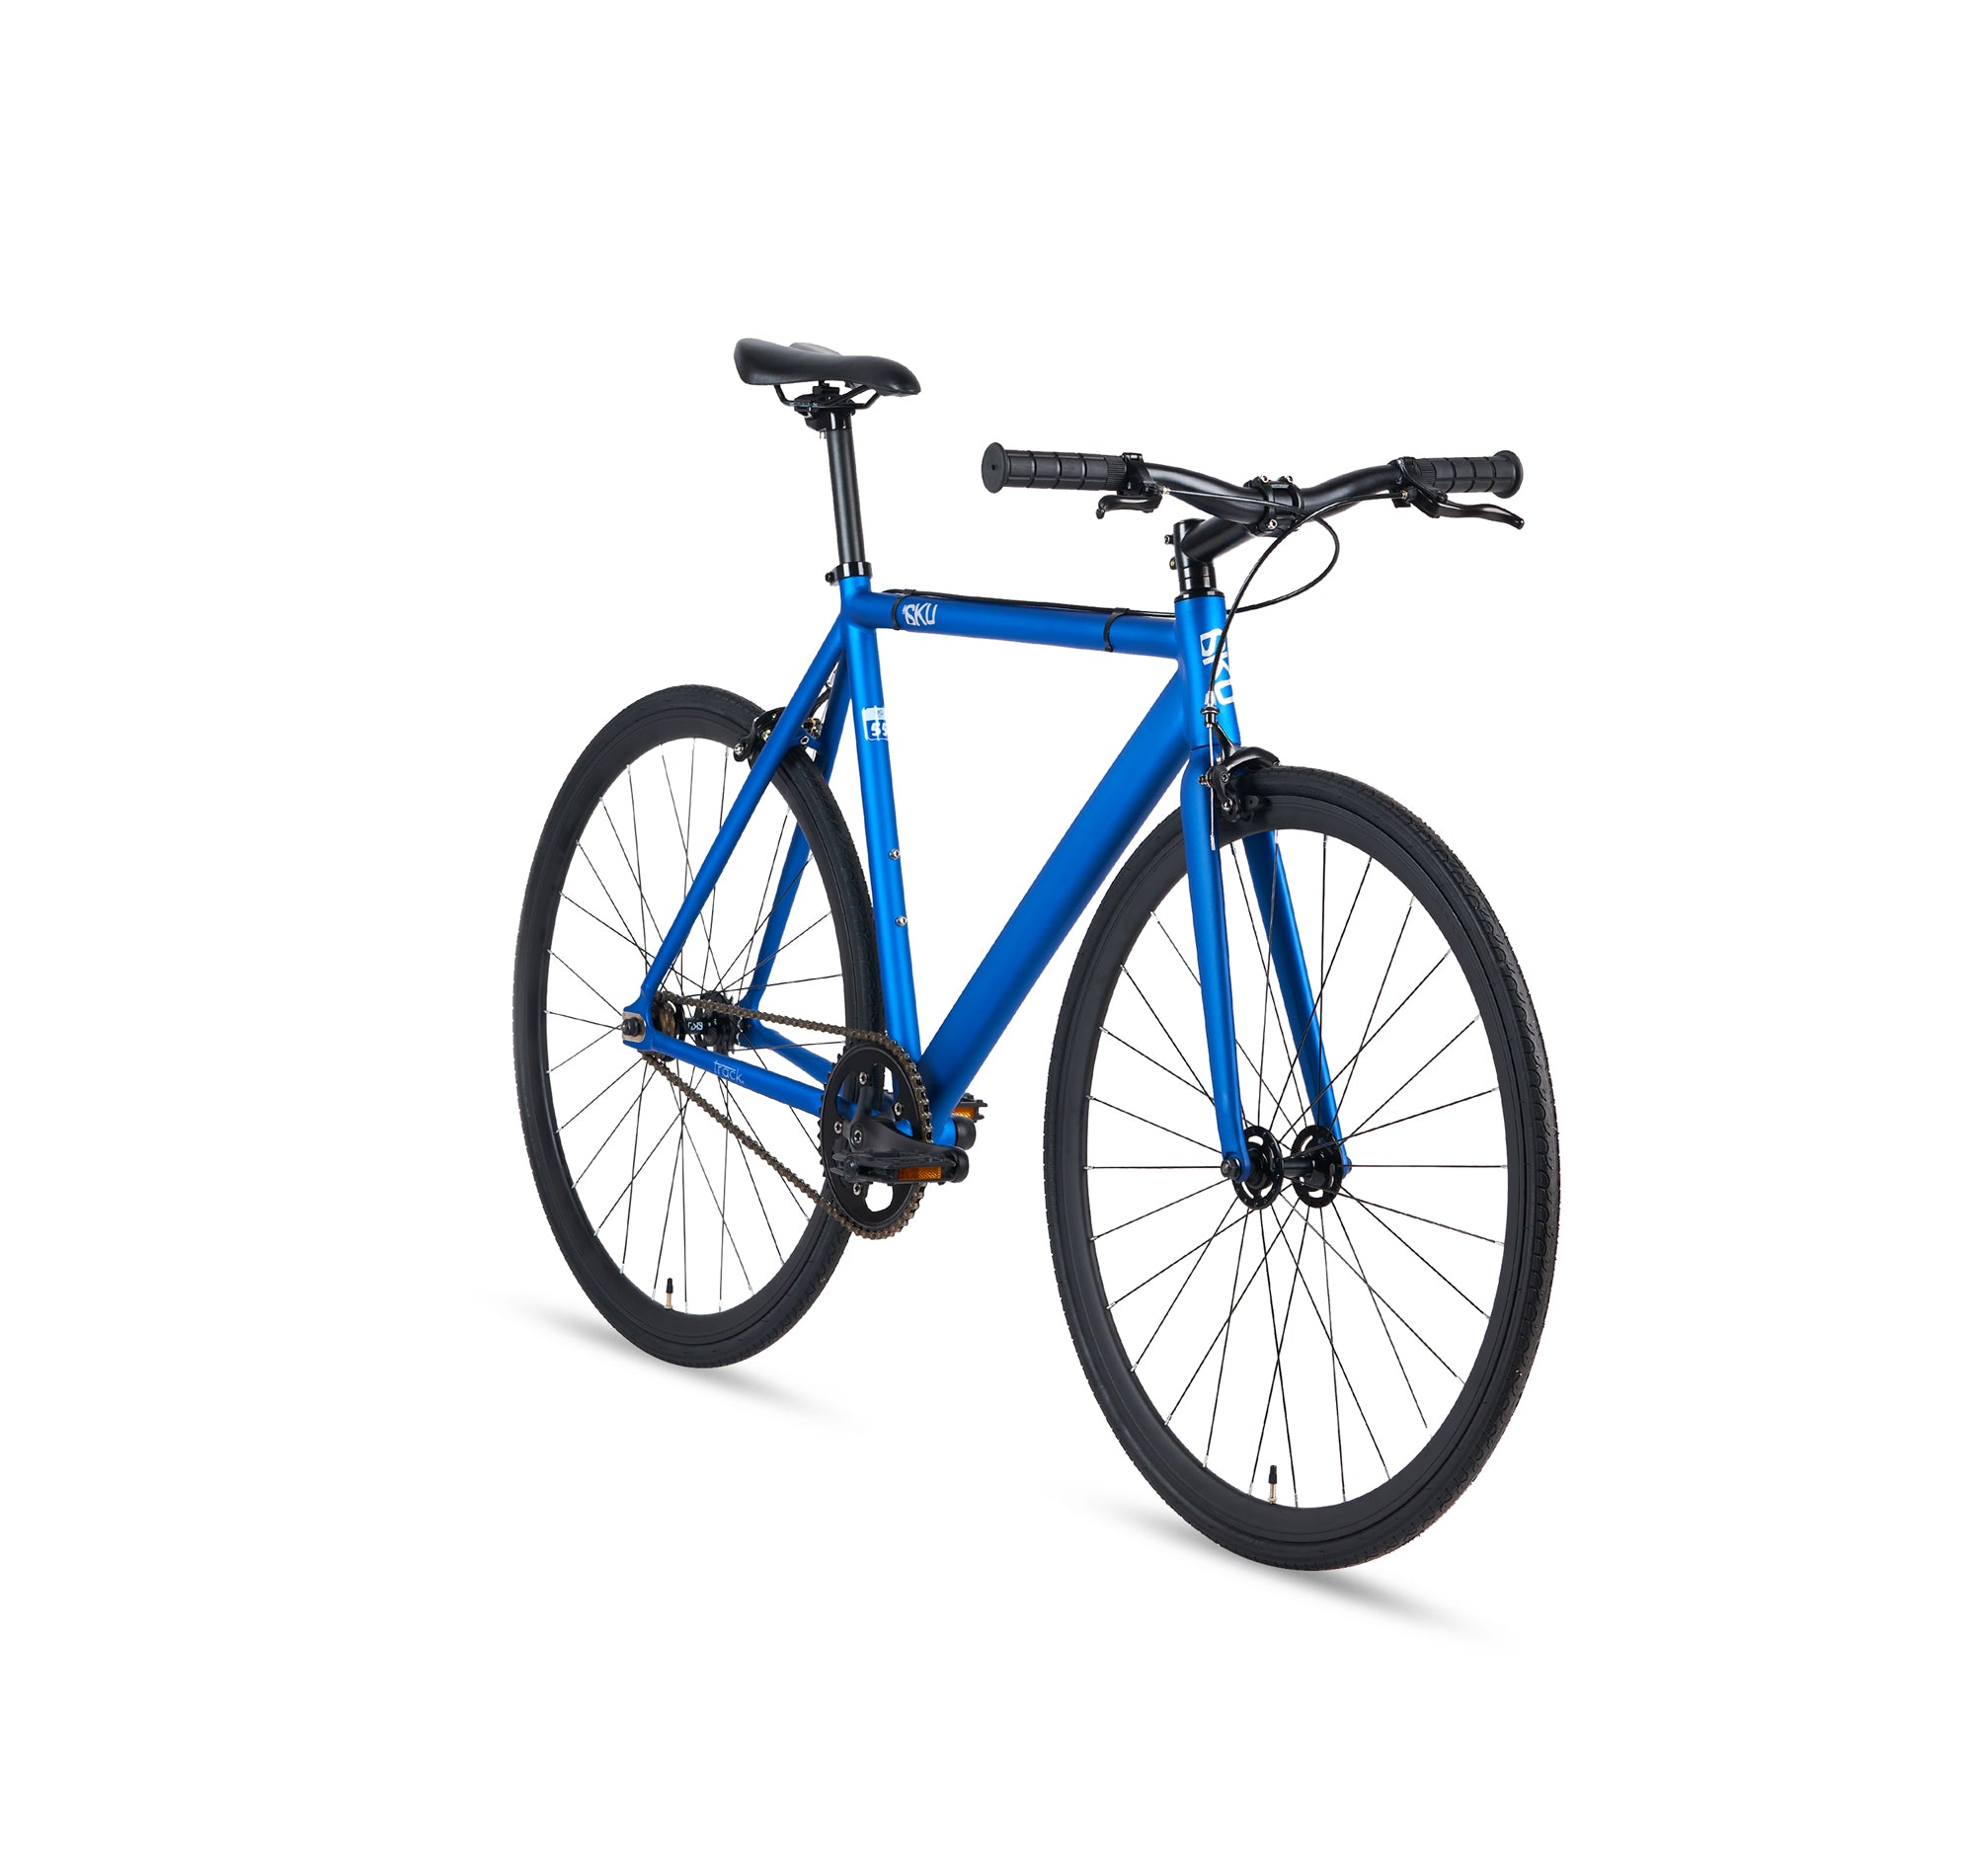 blue fixie bike